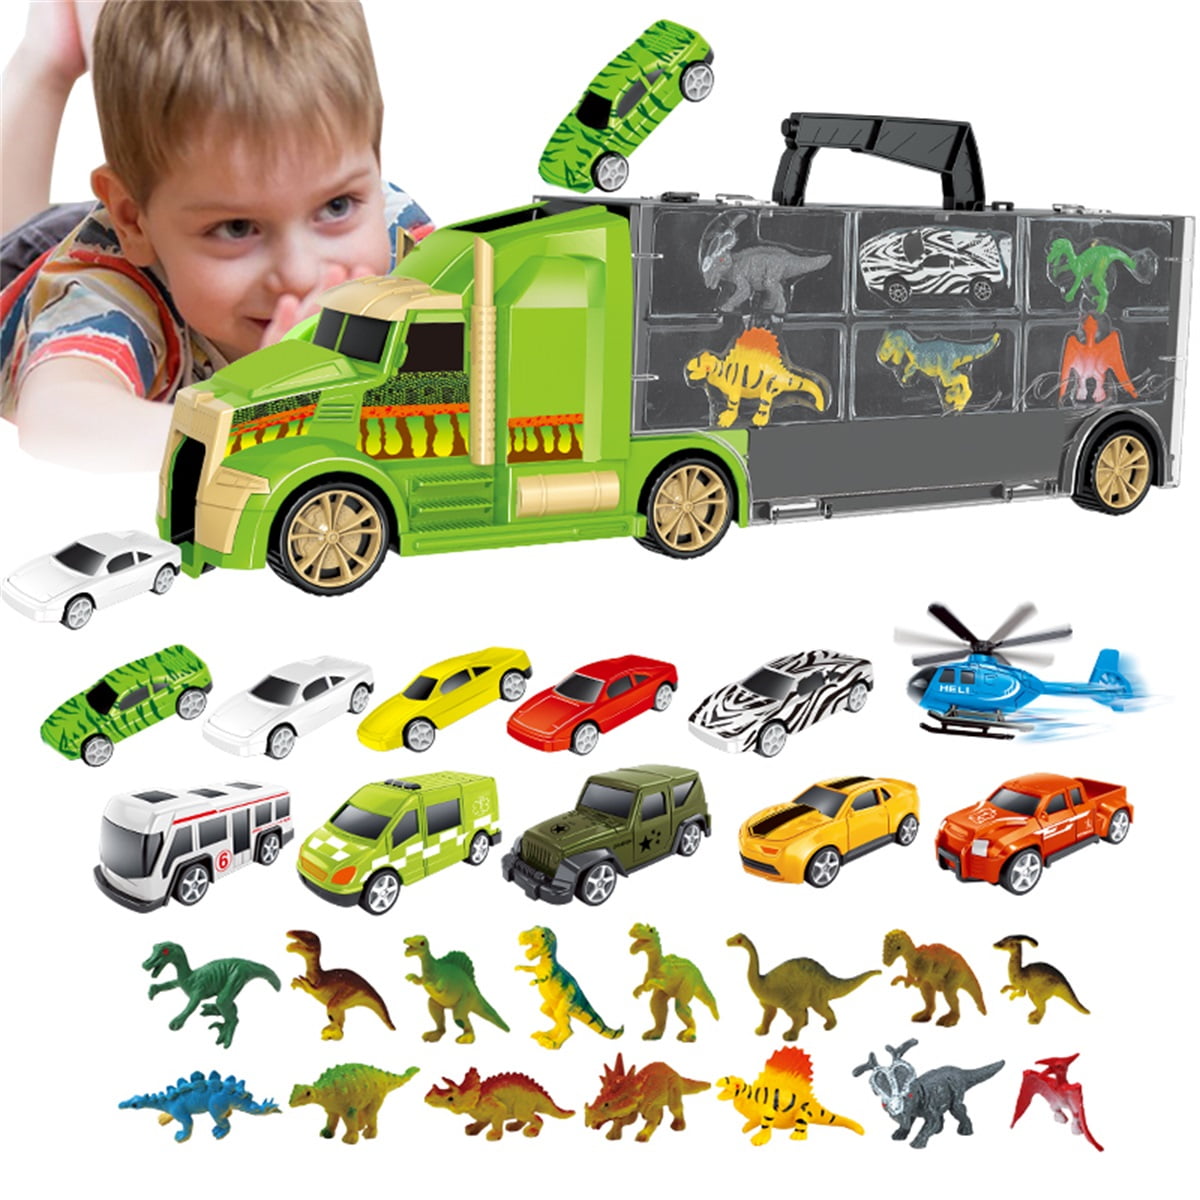 16 jouets de camion - Transporteur de camion de Algeria